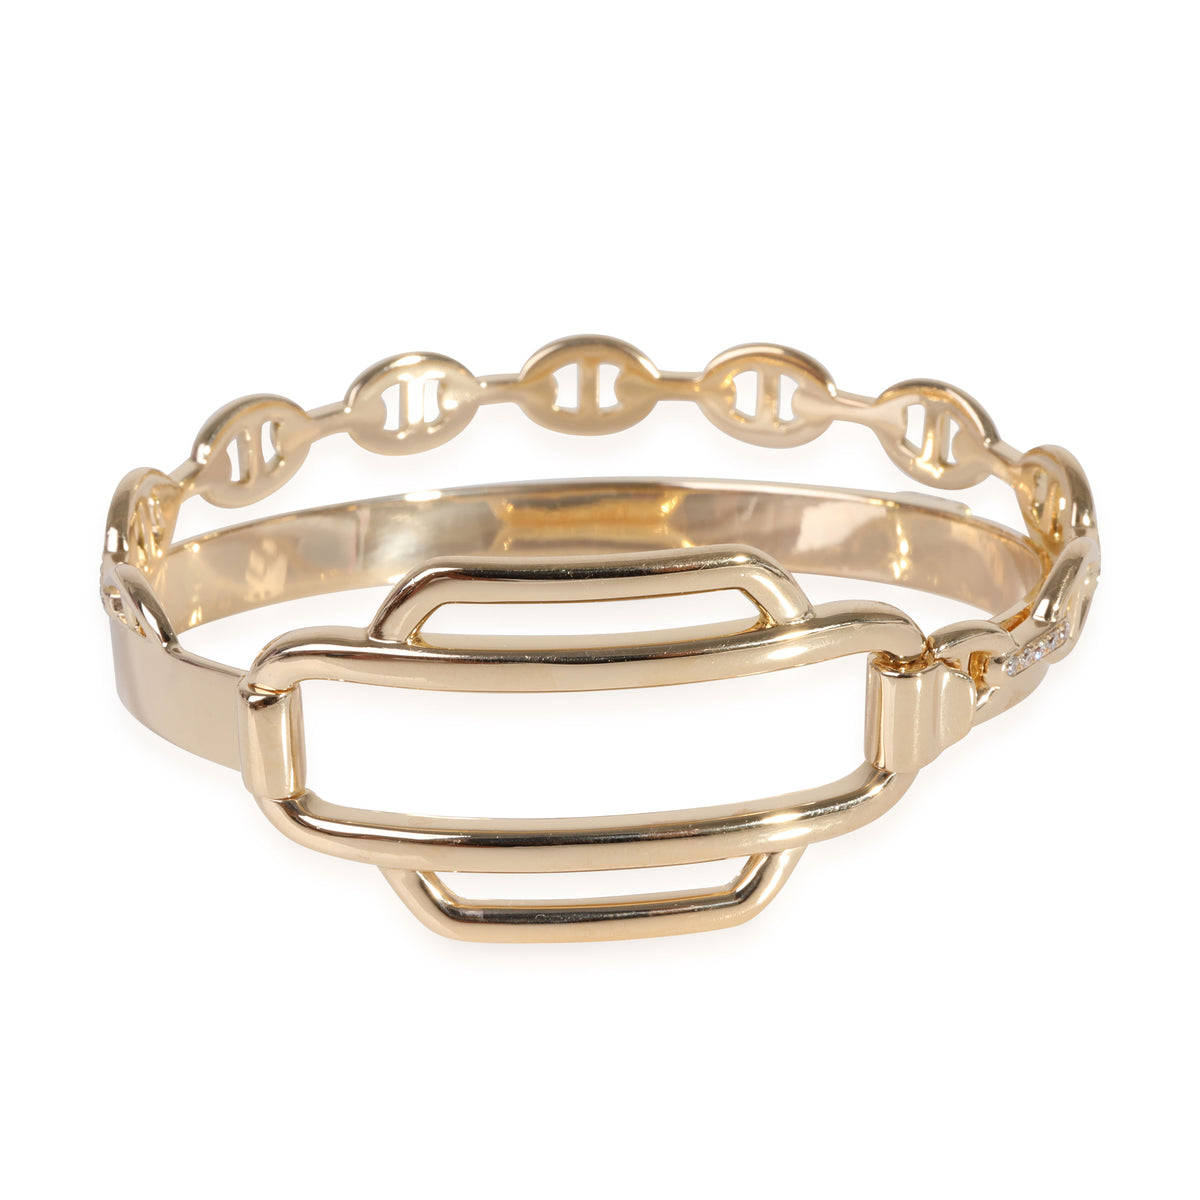 Double Tour Collier De Chien Diamond Bracelet in 18k Yellow Gold 0.79 Ctw